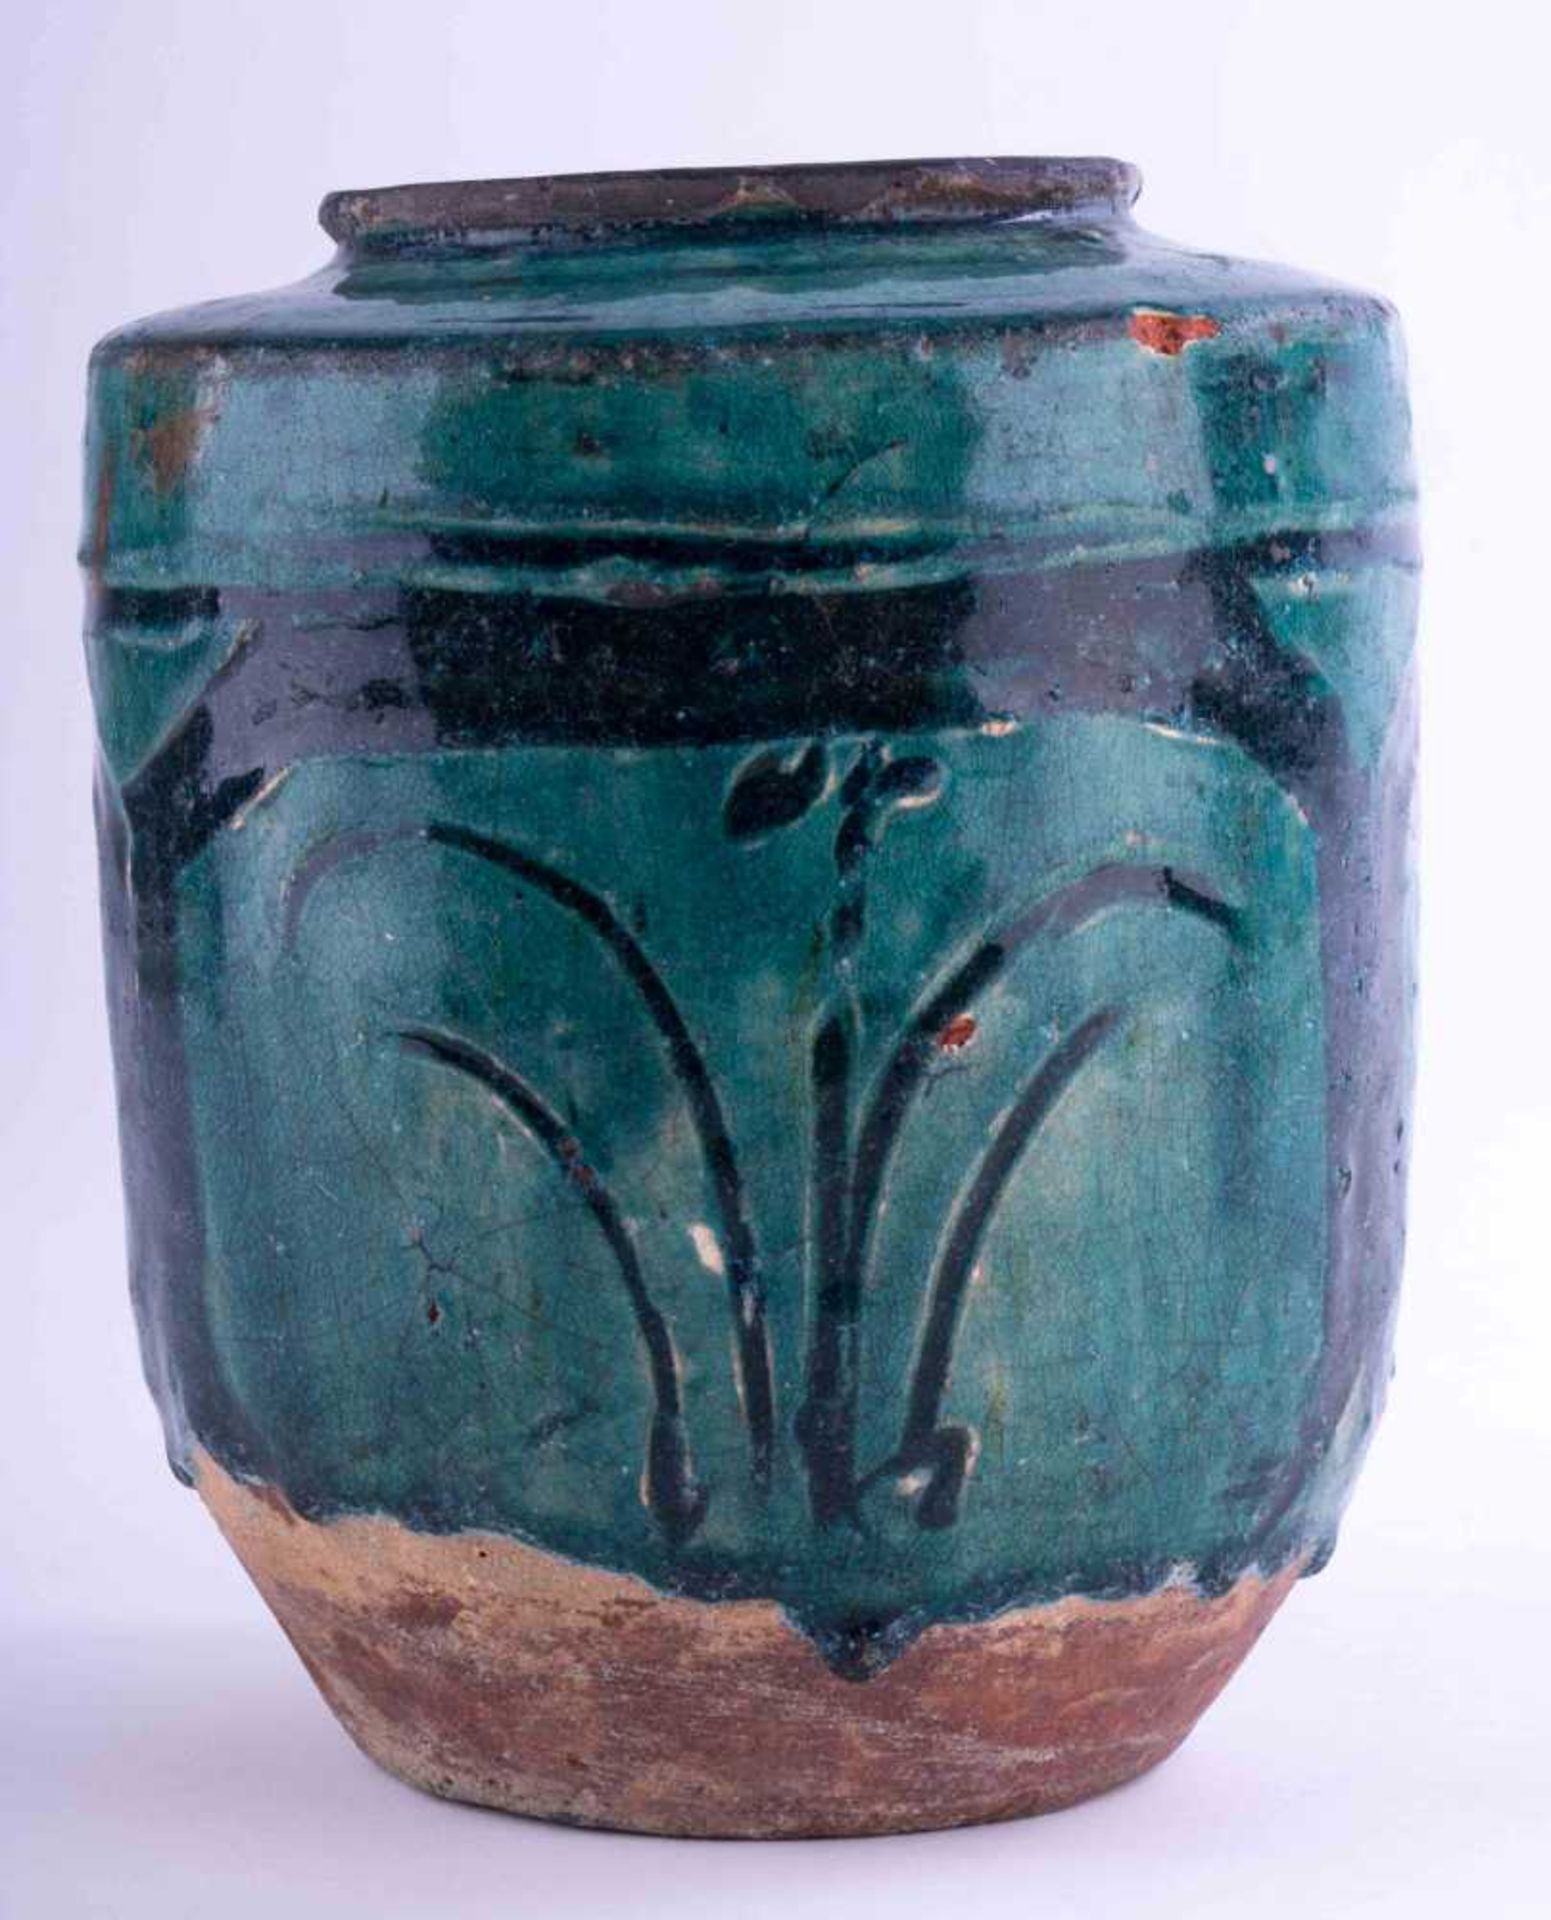 Schultertopf China 18. Jhd. oder früher / Shoulder pot, China 18th century or earlier grün glasiert, - Bild 3 aus 5